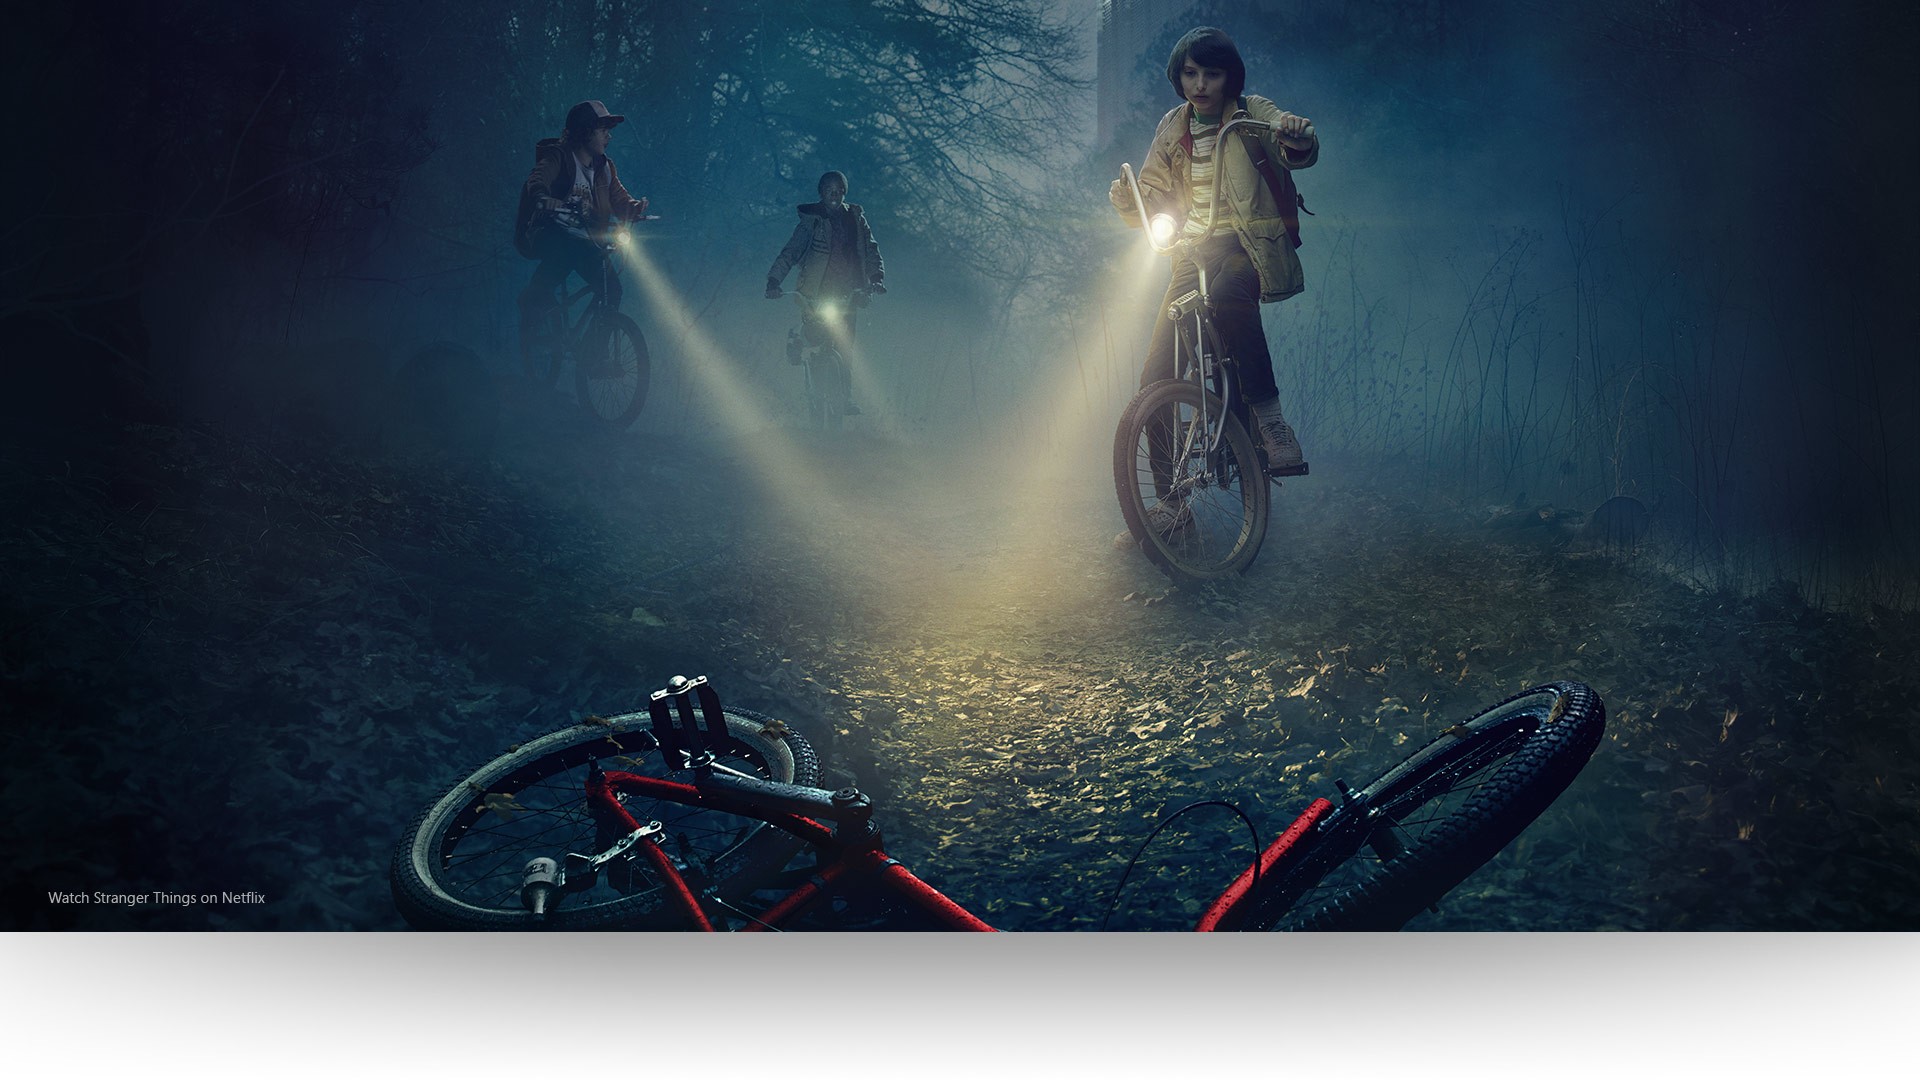 Stranger Things – Dustin, Lucas és Mike rávilágítanak egy elhagyatott biciklire egy baljós erdei ösvényen. Nézd meg a Stranger Things sorozatot a Netflixen.